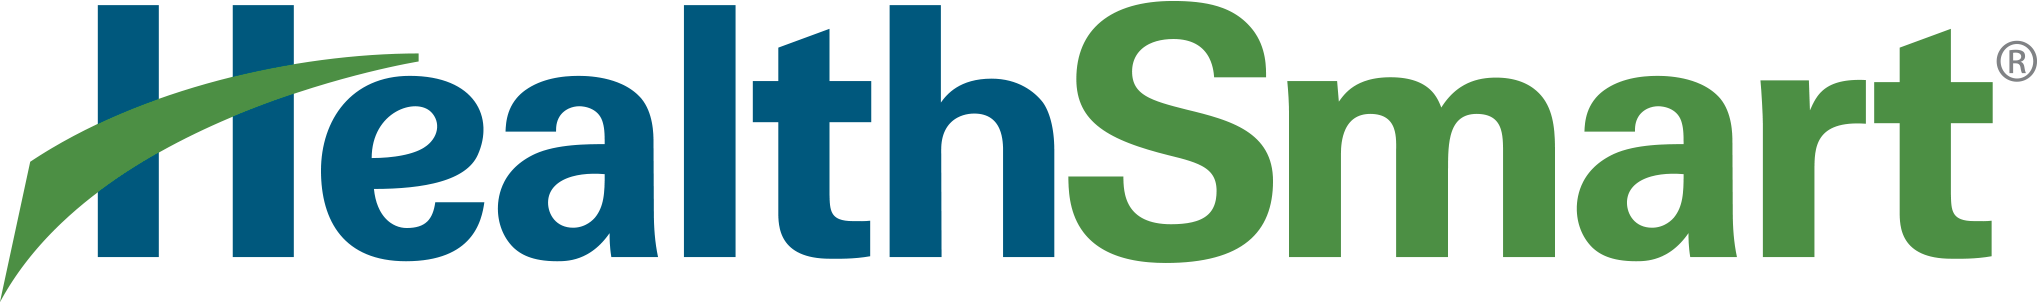 HS-Logo-2037x303-1